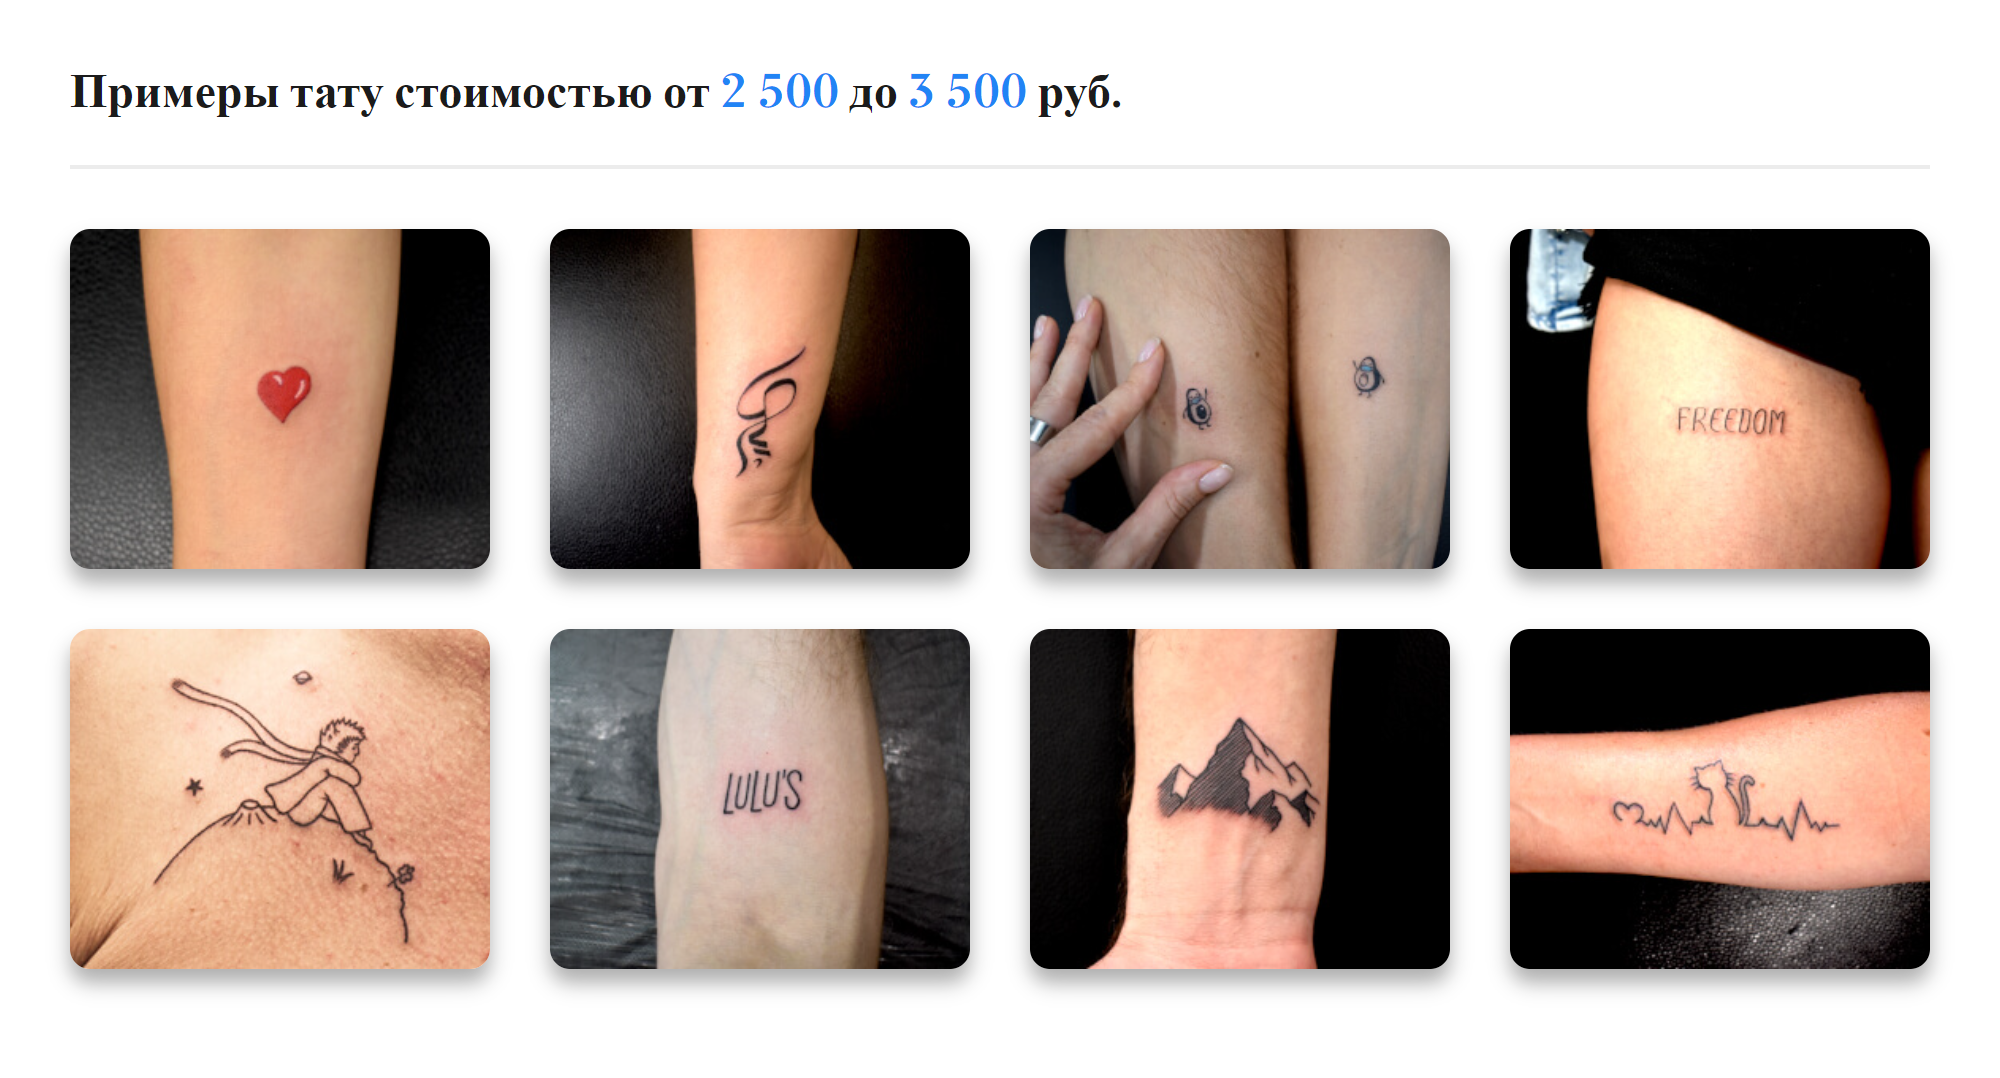 В московском салоне цены стартуют от 2500 ₽ за самую маленькую татуировку. Источник: maze.tattoo